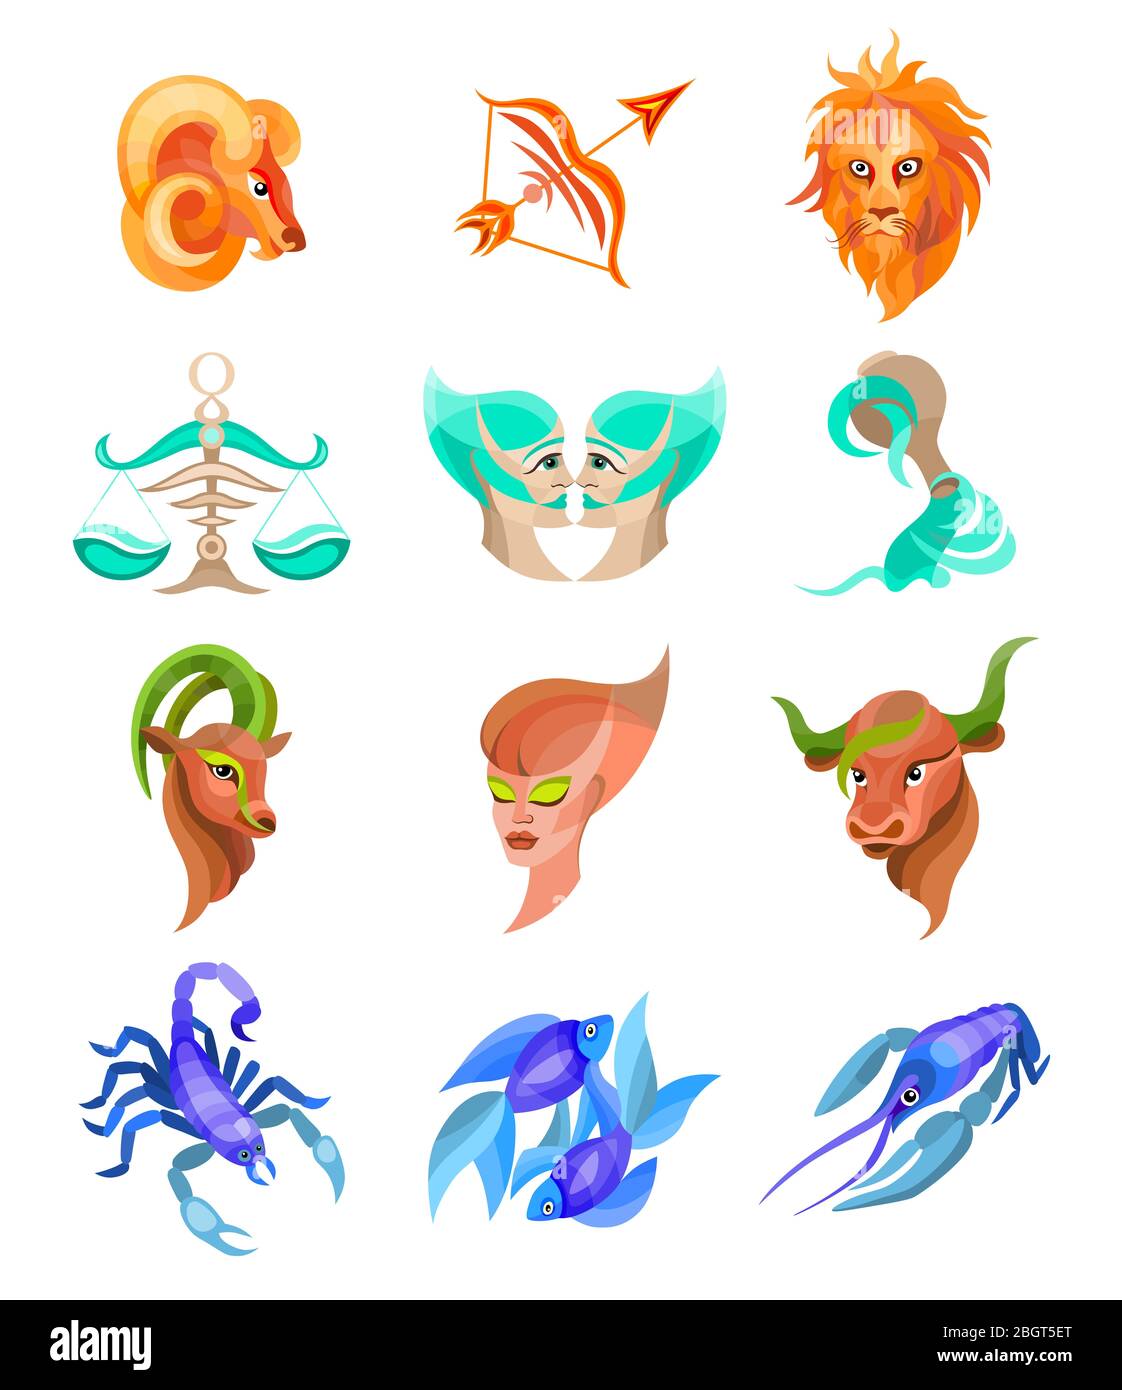 zodiaque signes boutons plats ensemble de symboles horoscope, collection d'icônes d'astrologie Banque D'Images